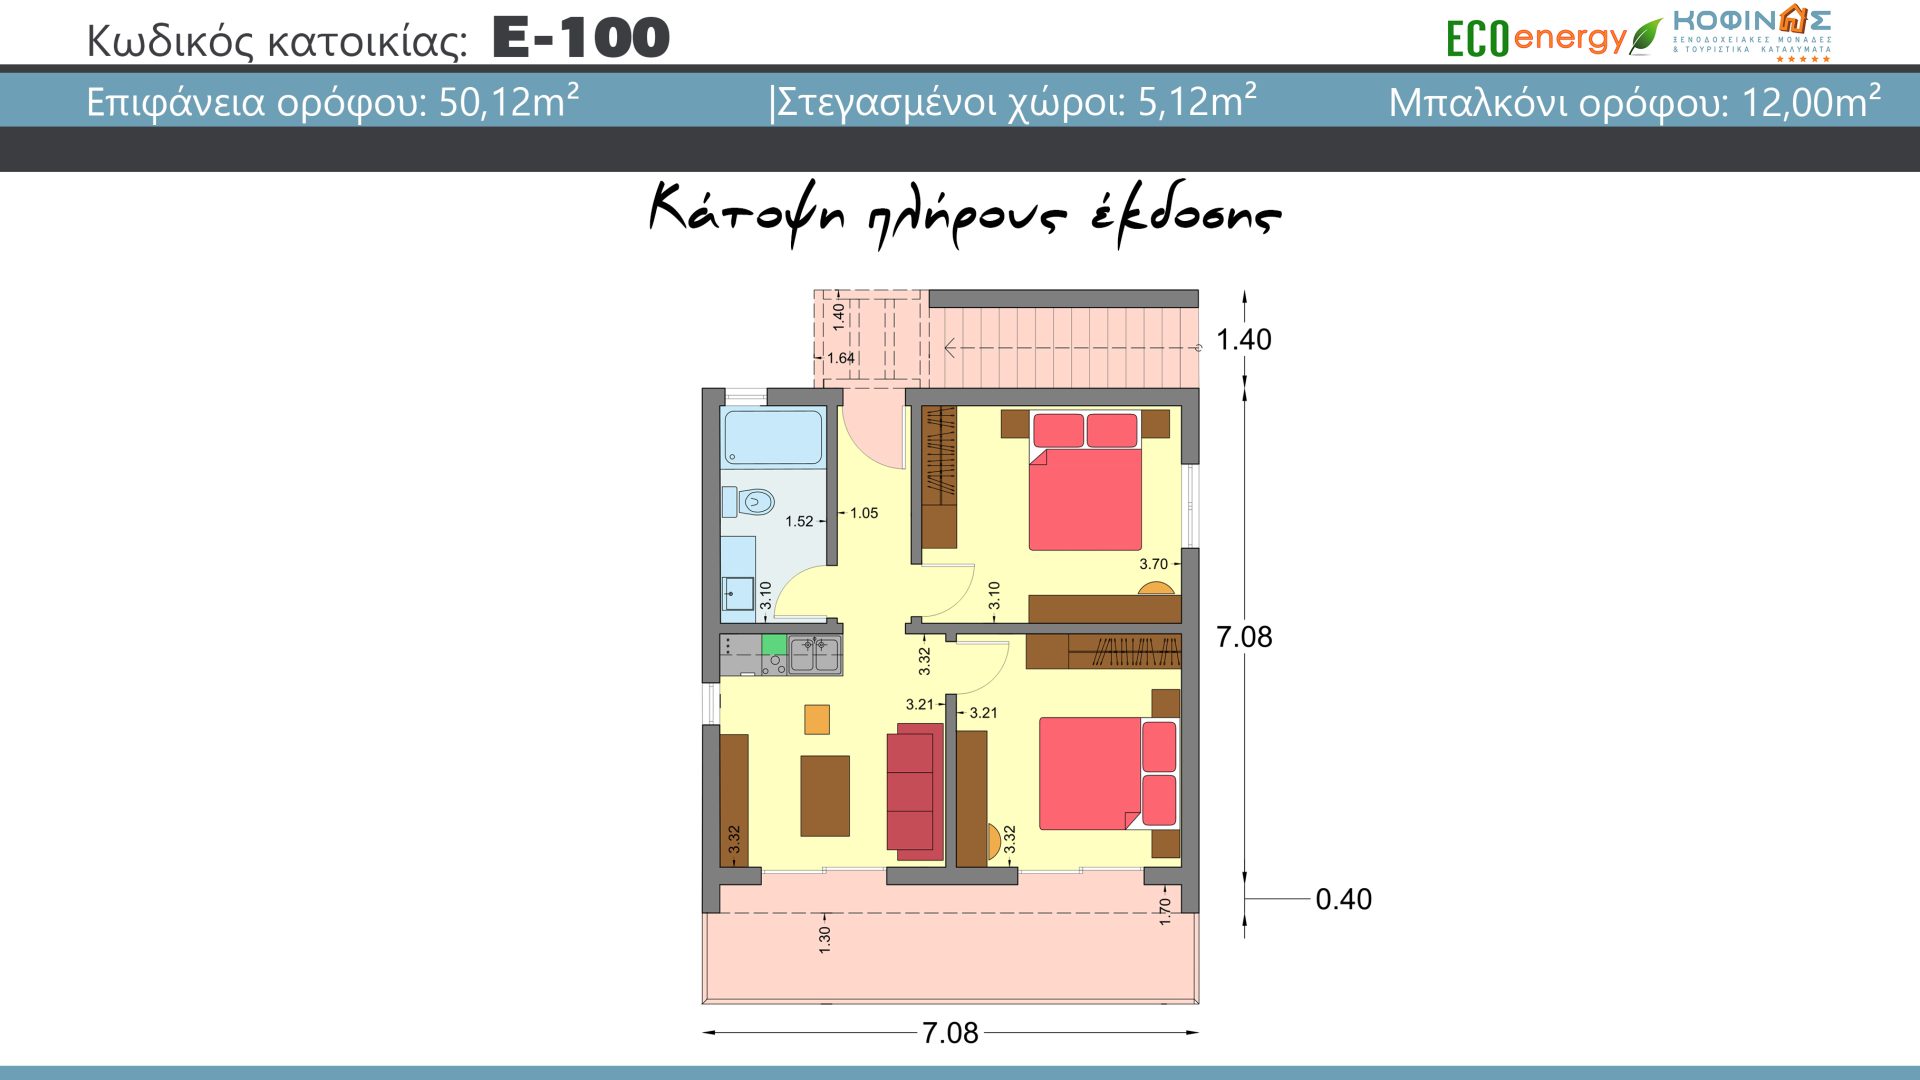 Συγκρότημα κατοικιών E-100, συνολικής επιφάνειας 2 x 50,12 = 100,24 τ.μ., συνολική επιφάνεια στεγασμένων χώρων 5,12 τ.μ., μπαλκόνι 12,00 τ.μ.